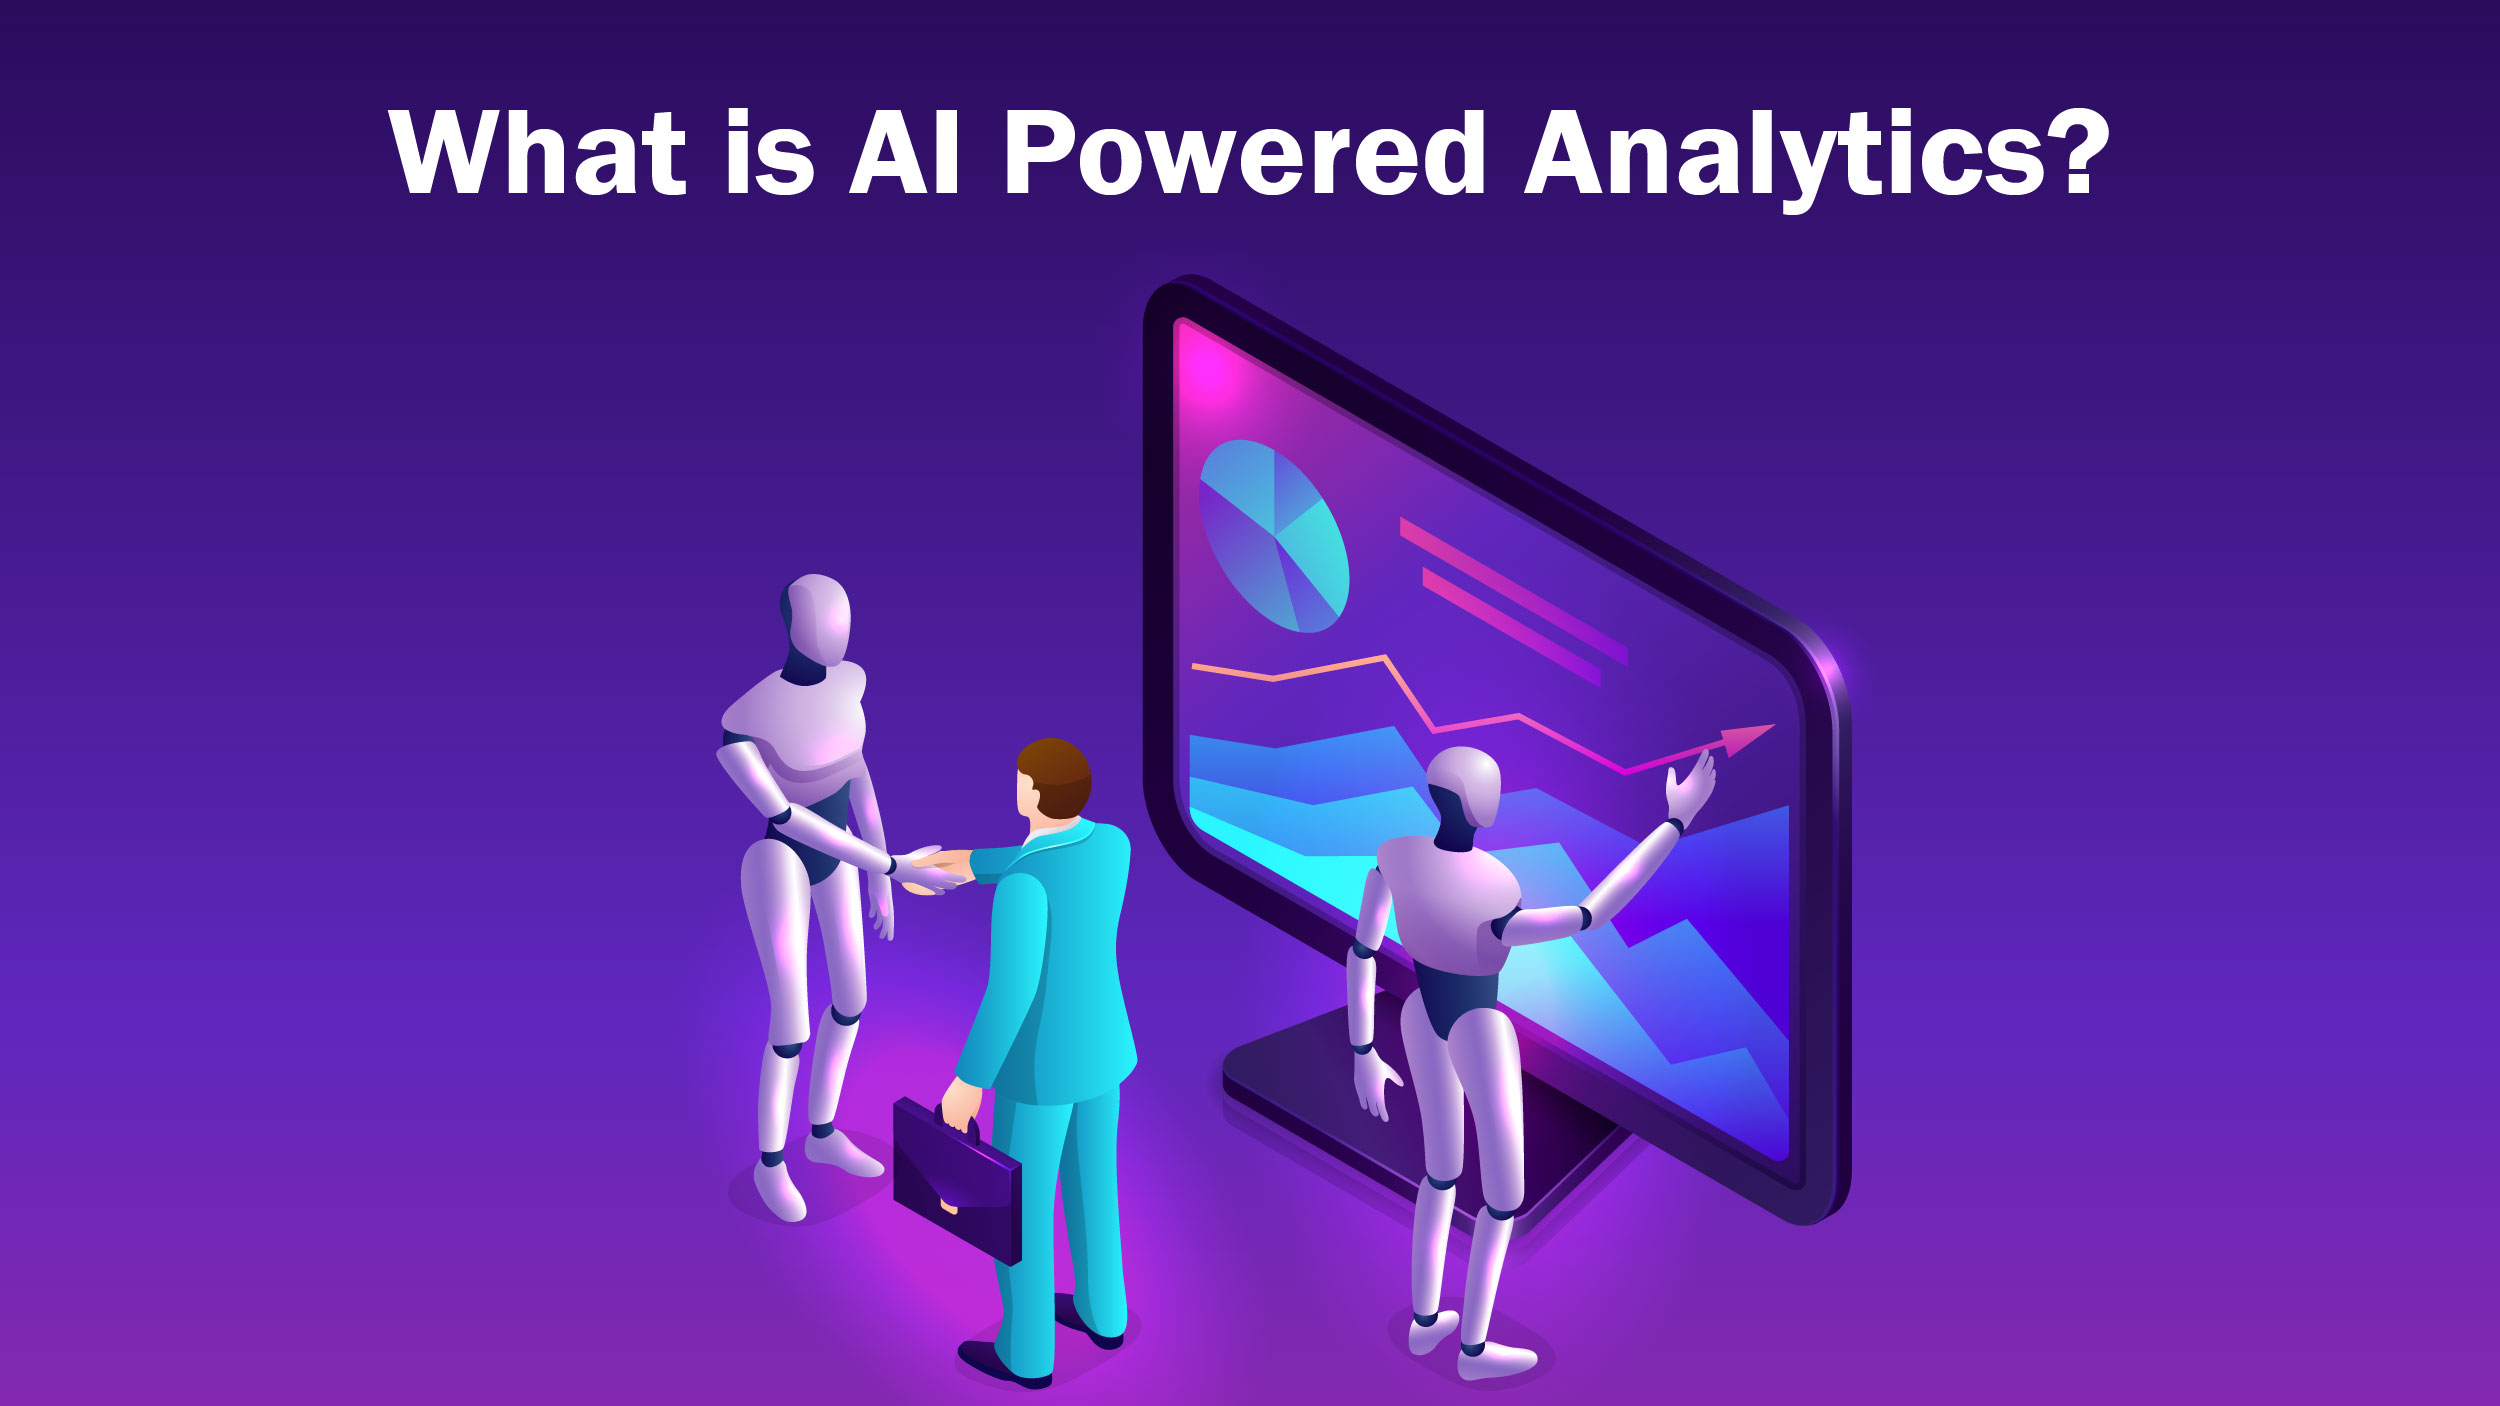 AI Powered Analytics